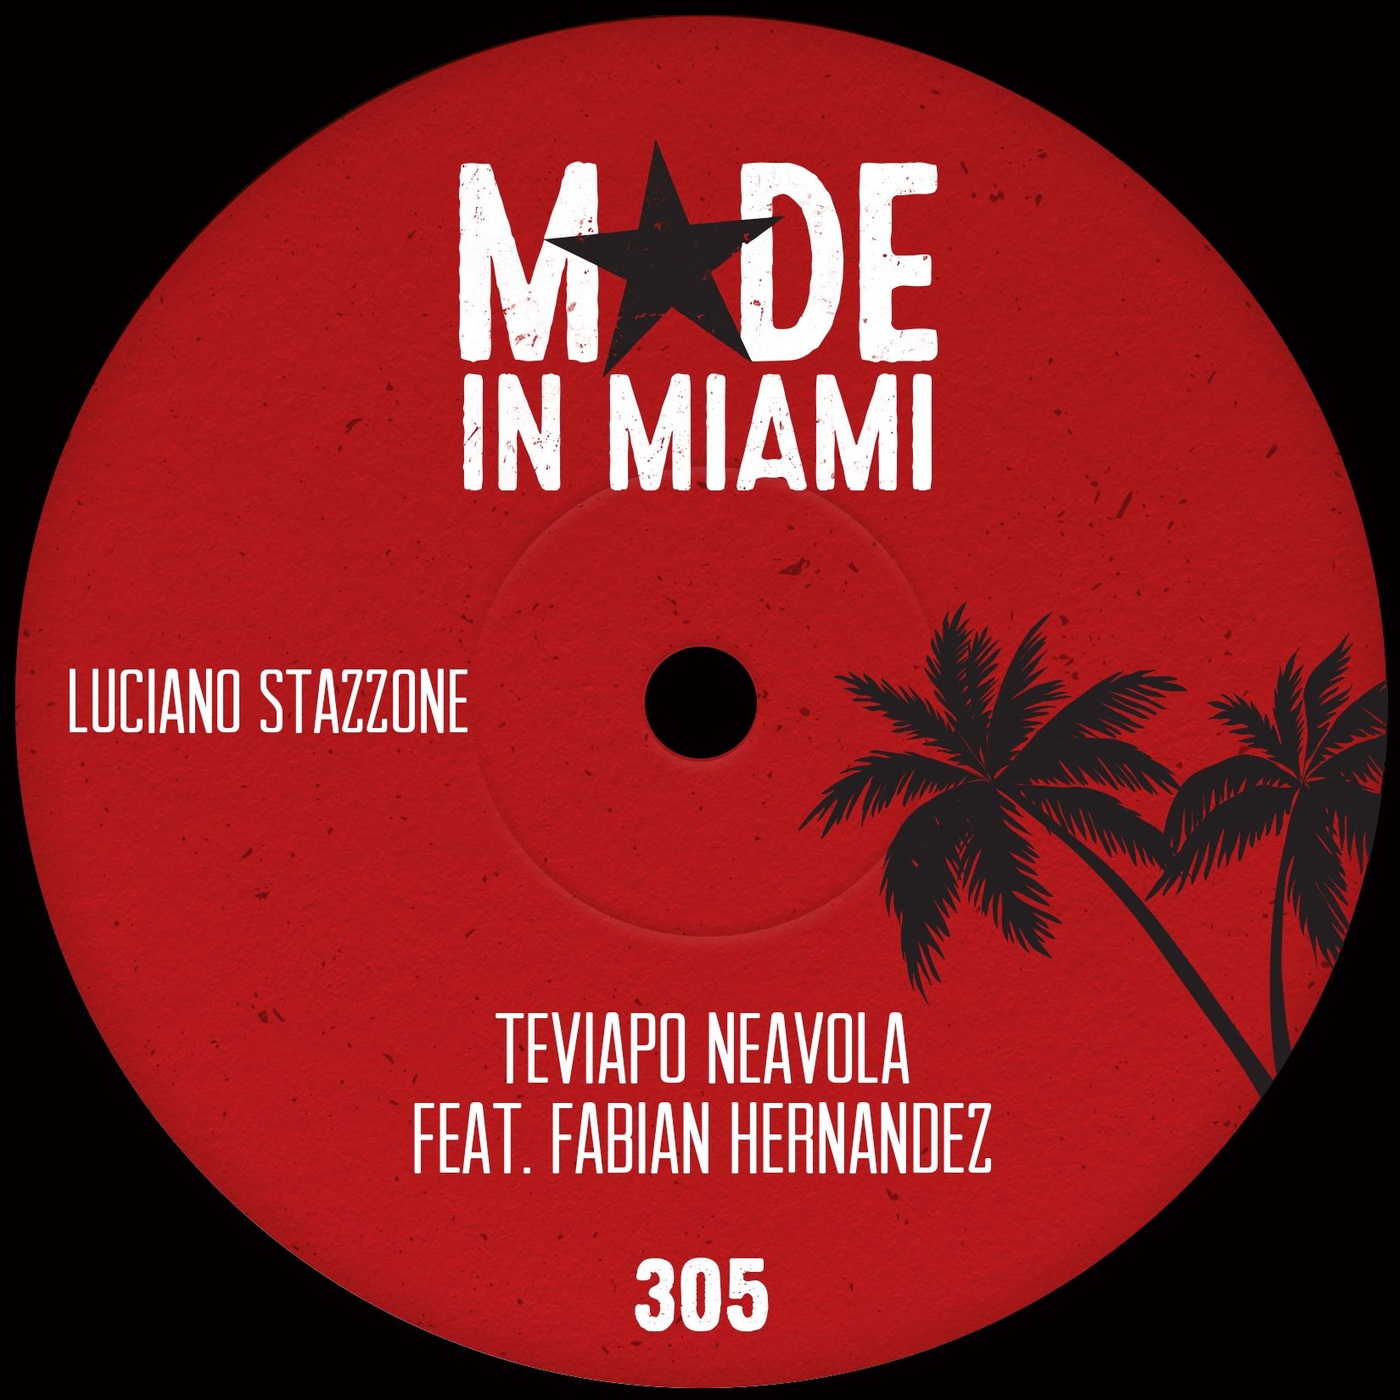 Luciano Stazzone - Teviapo neavola / Made In Miami